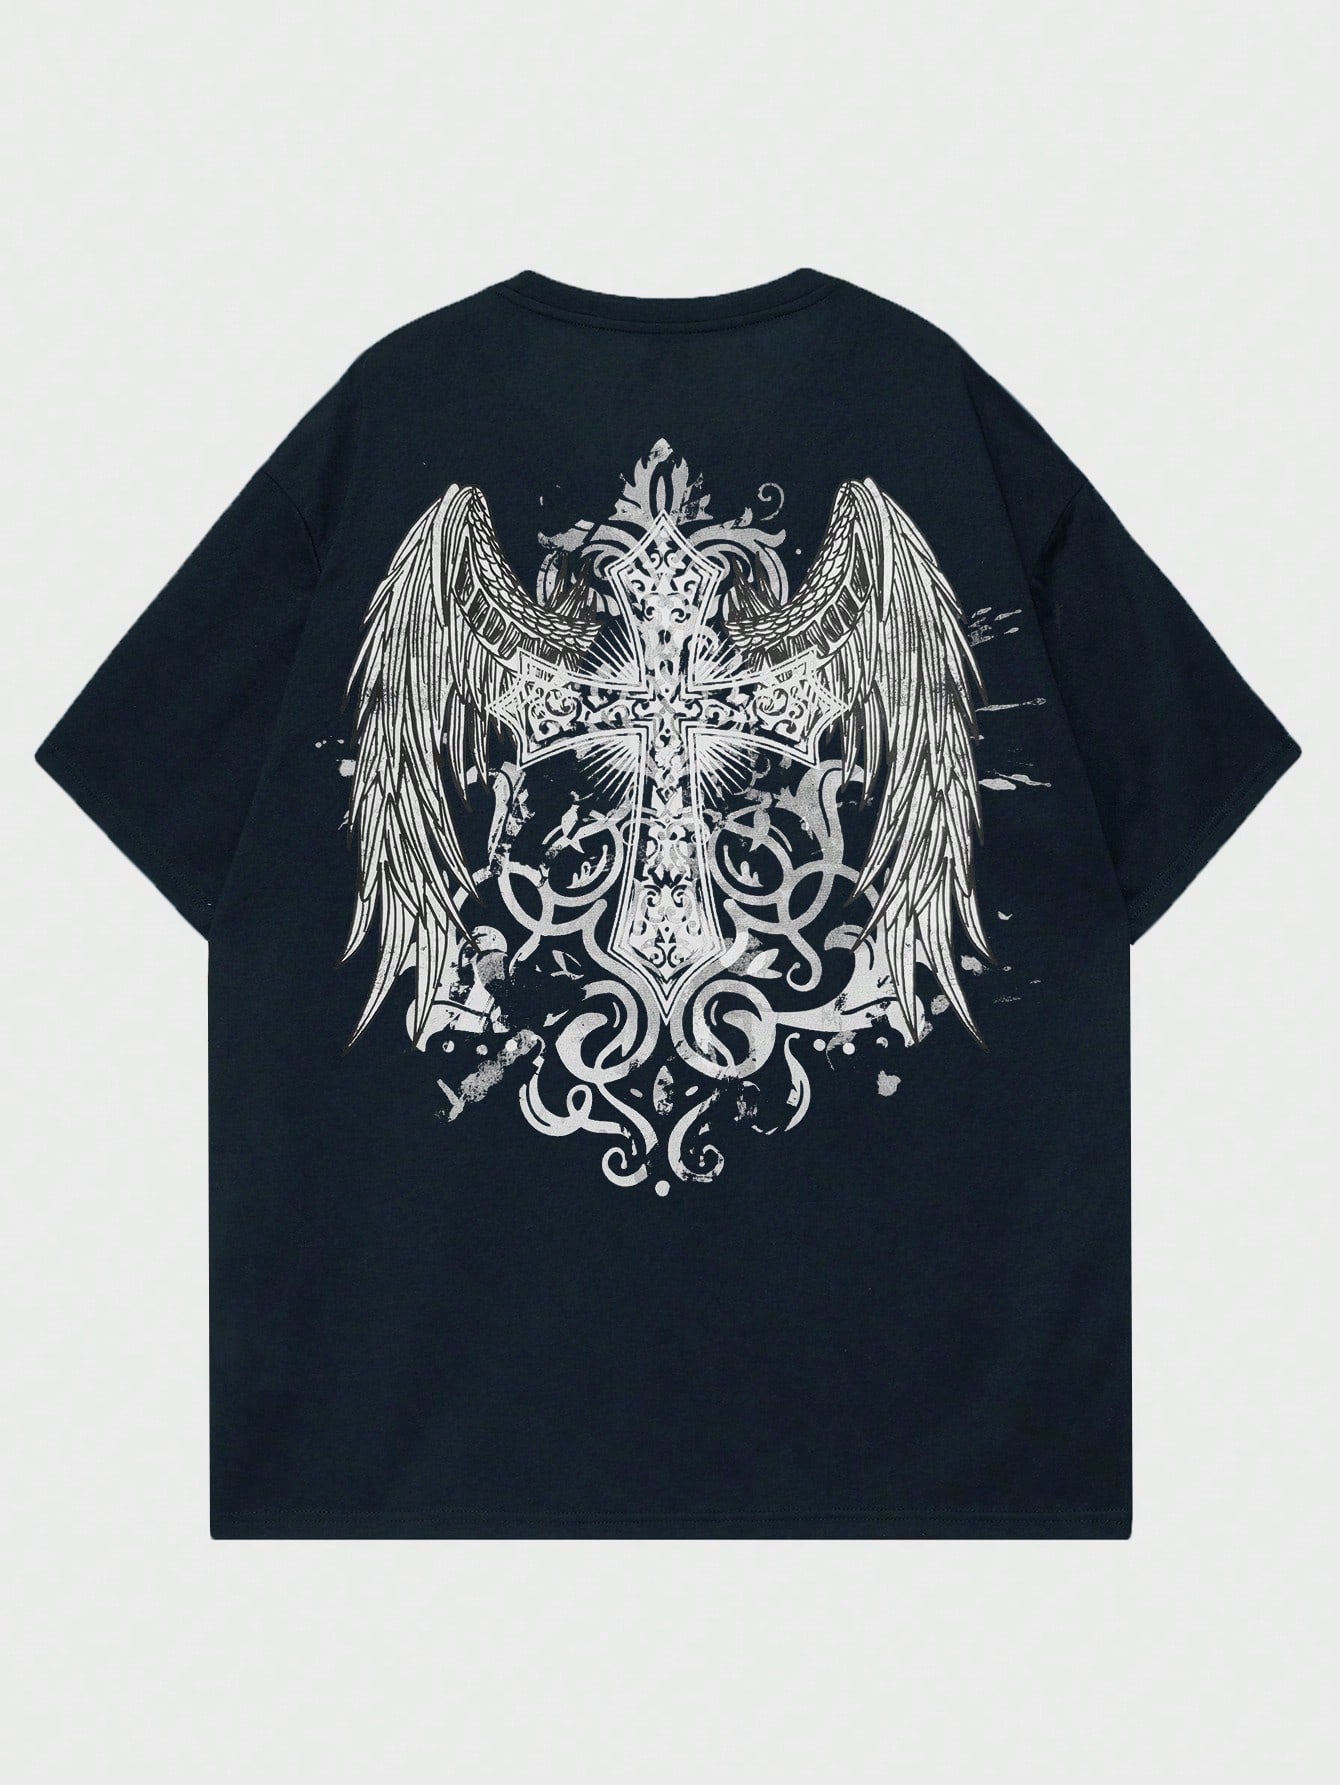 ROMWE Goth Мужская футболка с принтом снежинки и крестом для повседневной жизни, темно-синий набор крестов иерейский лист 168563